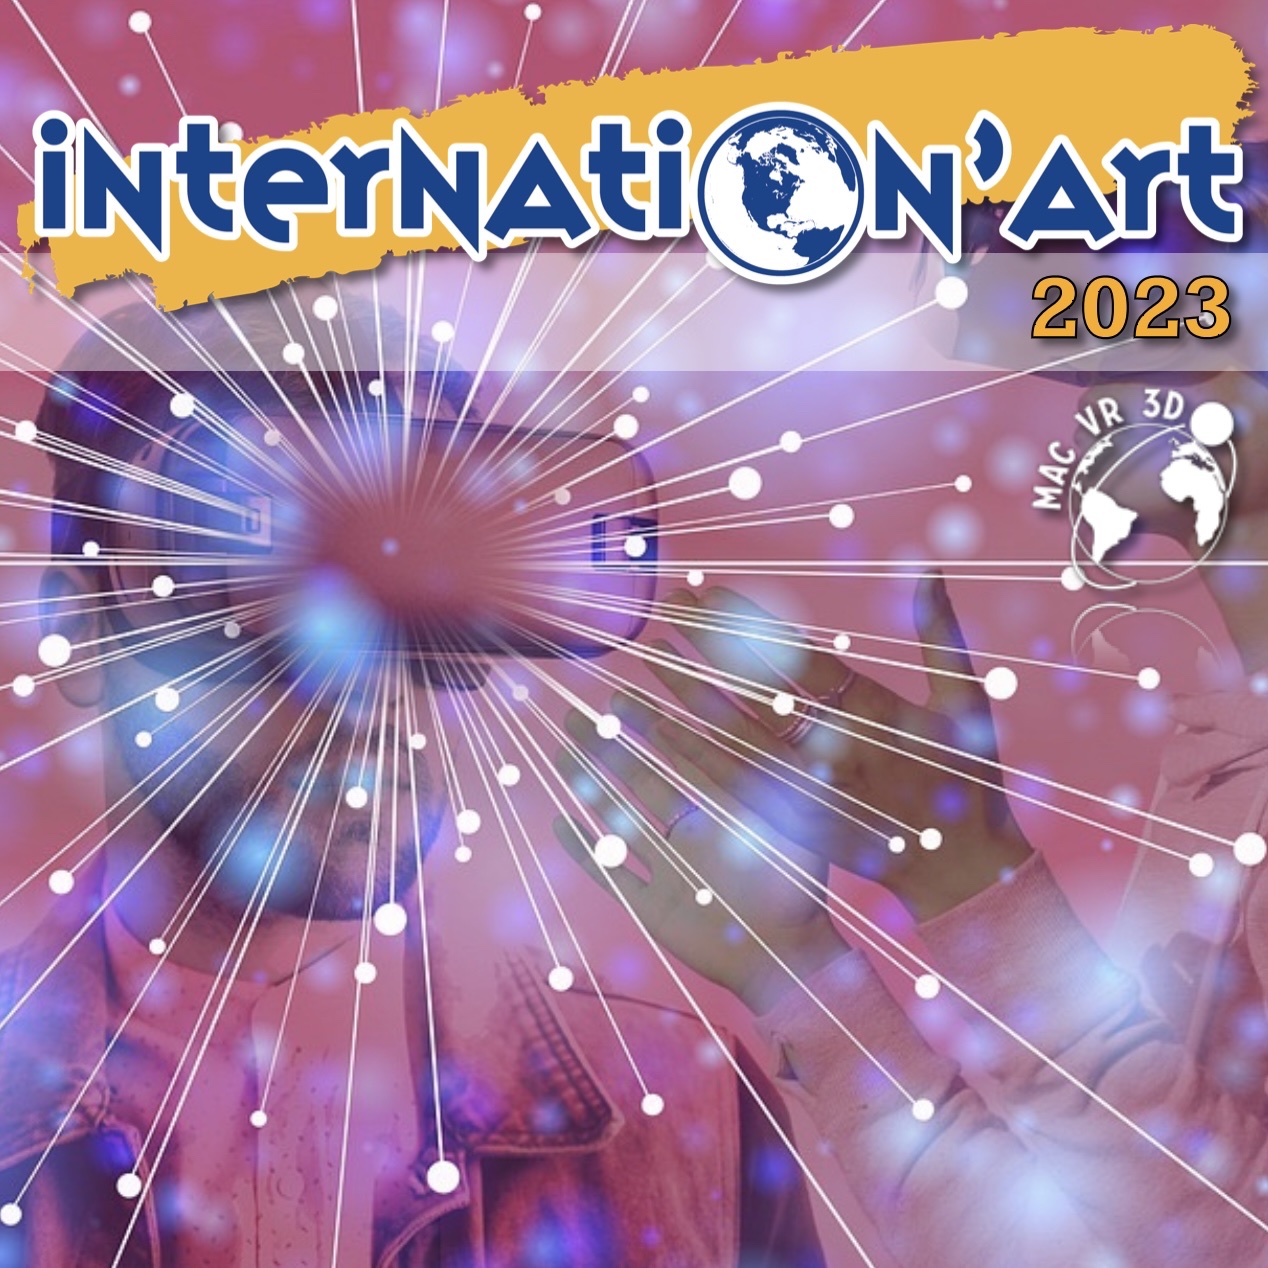 INTERNATION’ART 2023